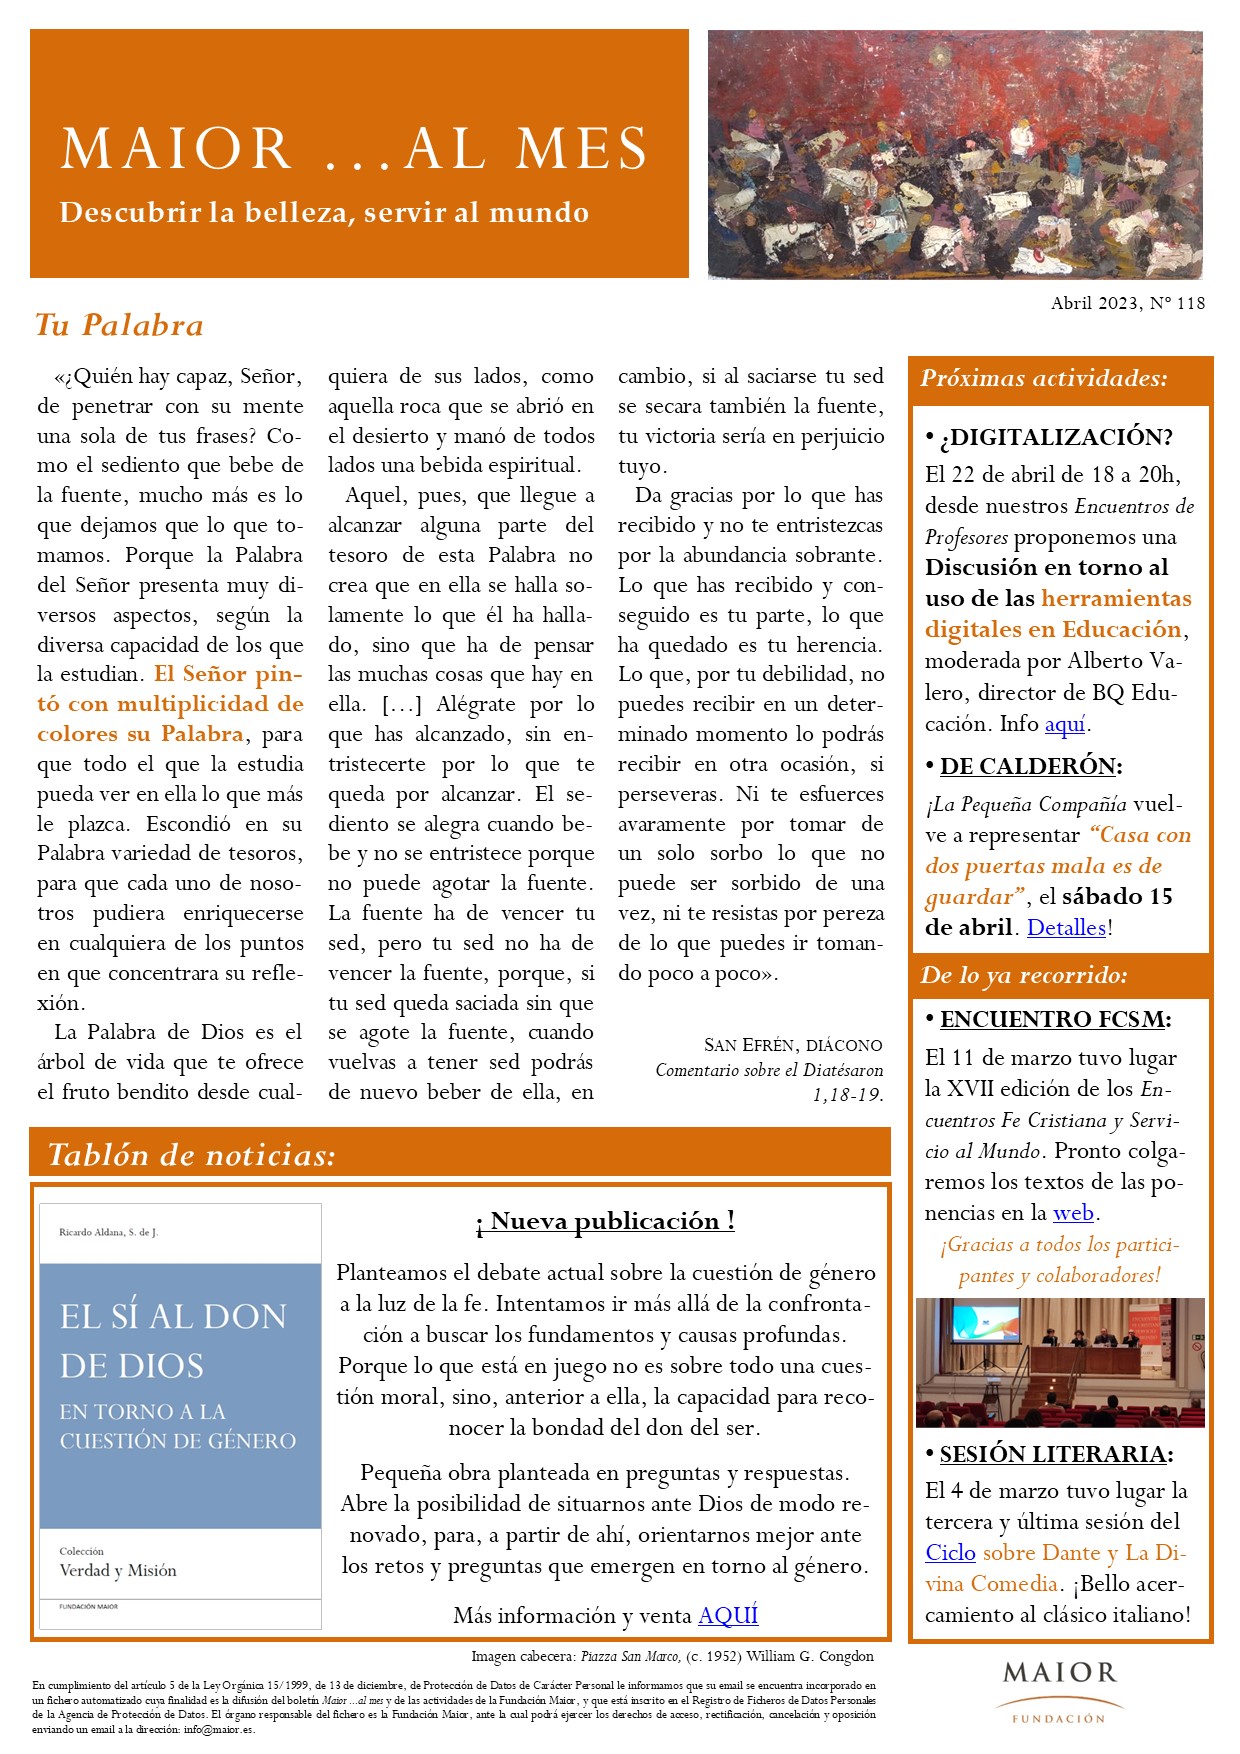 Boletín mensual de noticias y actividades de la Fundación Maior. Edición de abril 2023